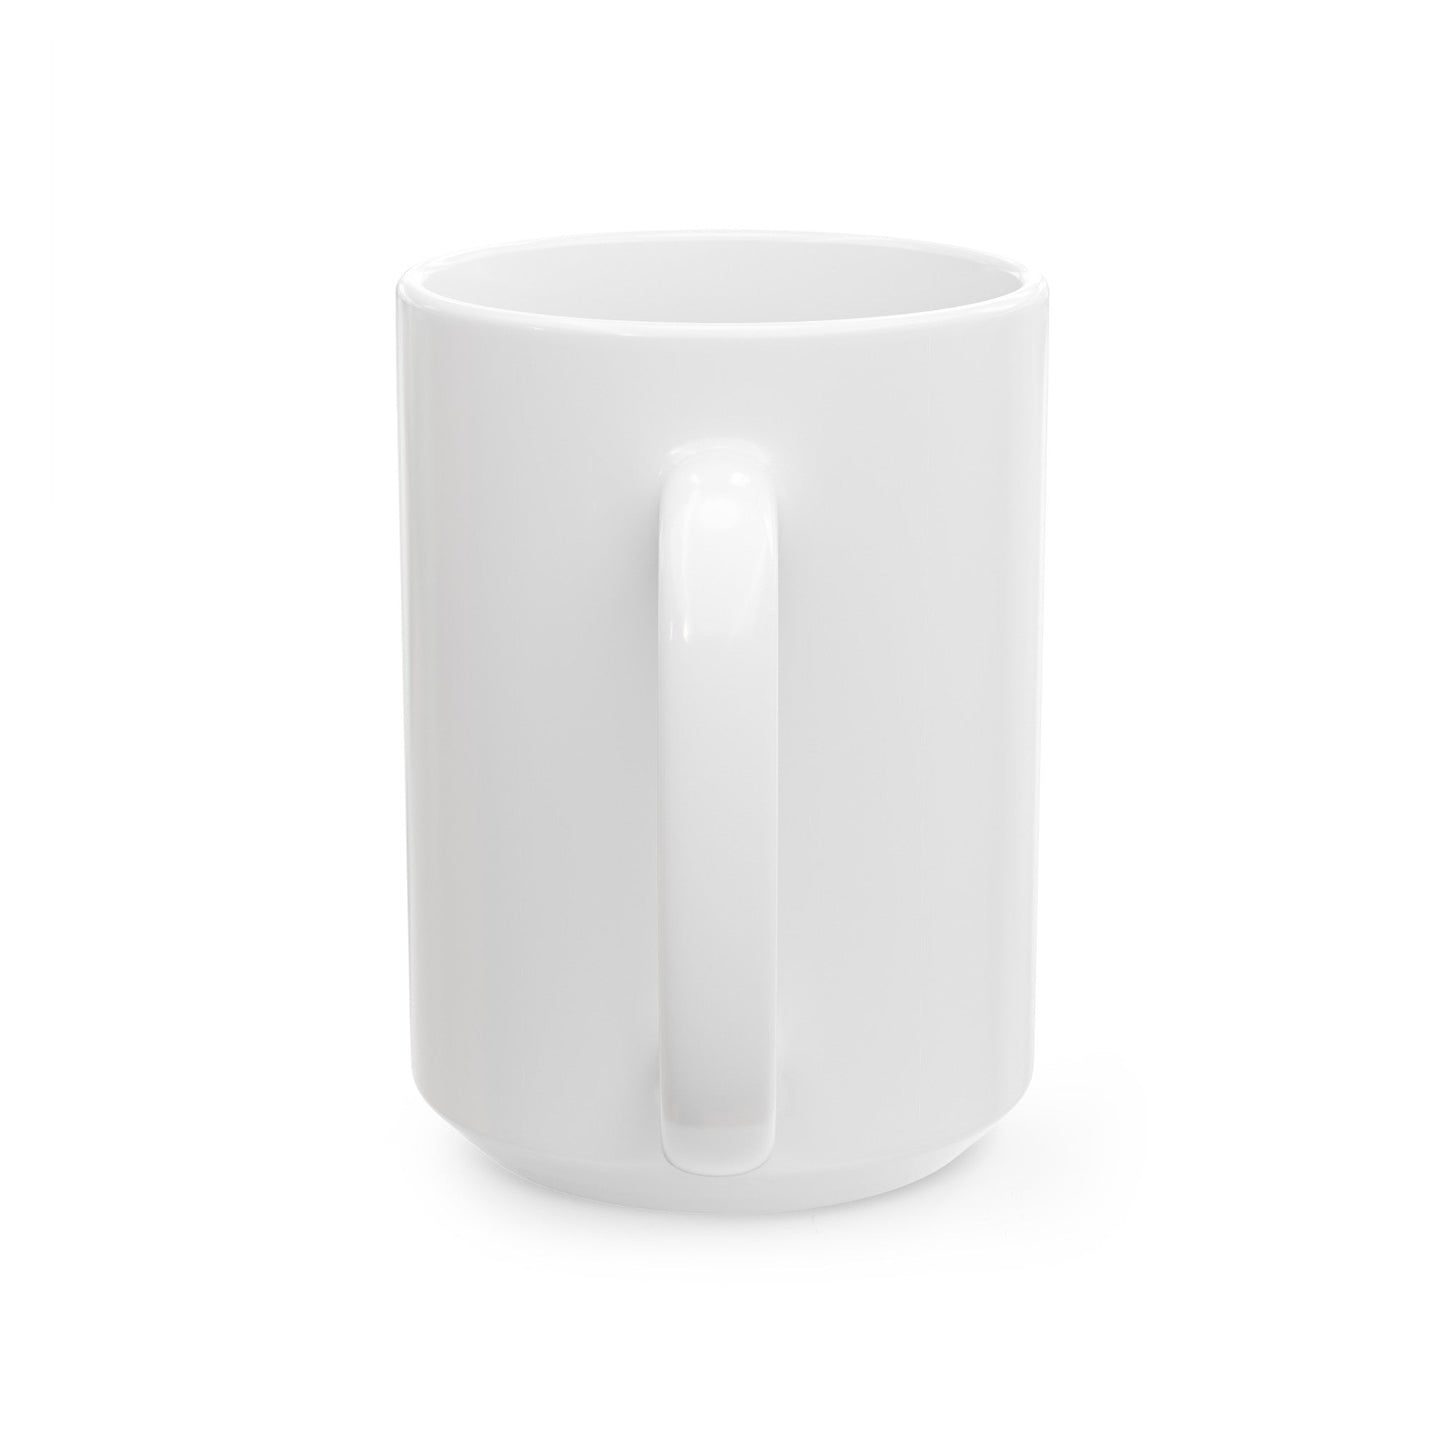 VFA 22 (U.S. Navy) White Coffee Mug-The Sticker Space